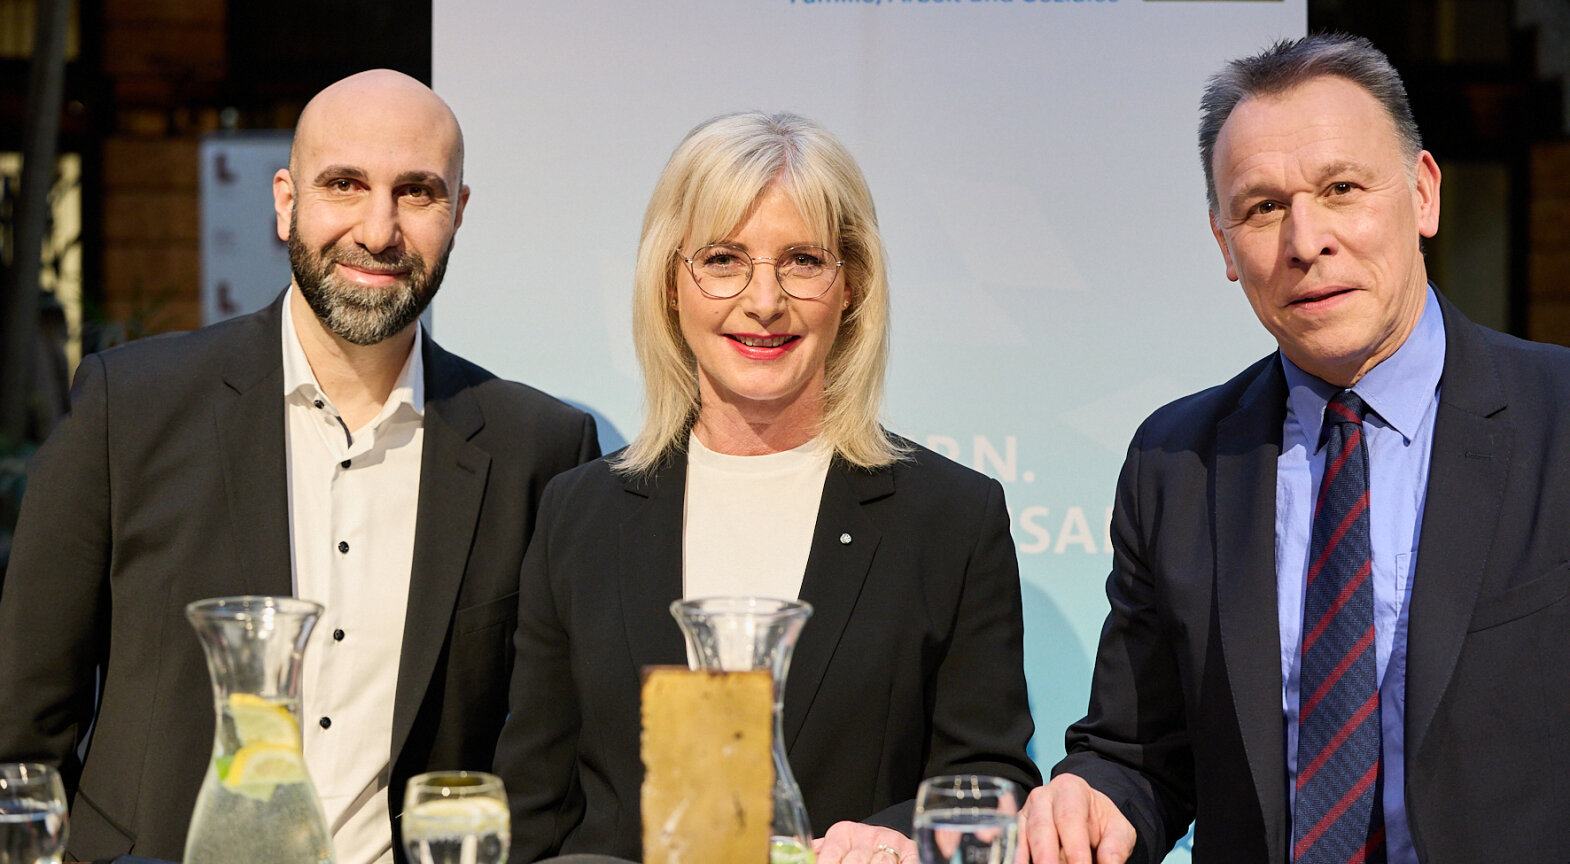 Extremismusexperte Ahmad Mansour, Sozialministerin Ulrike Scharf und Moderator Tobias Ranzinger